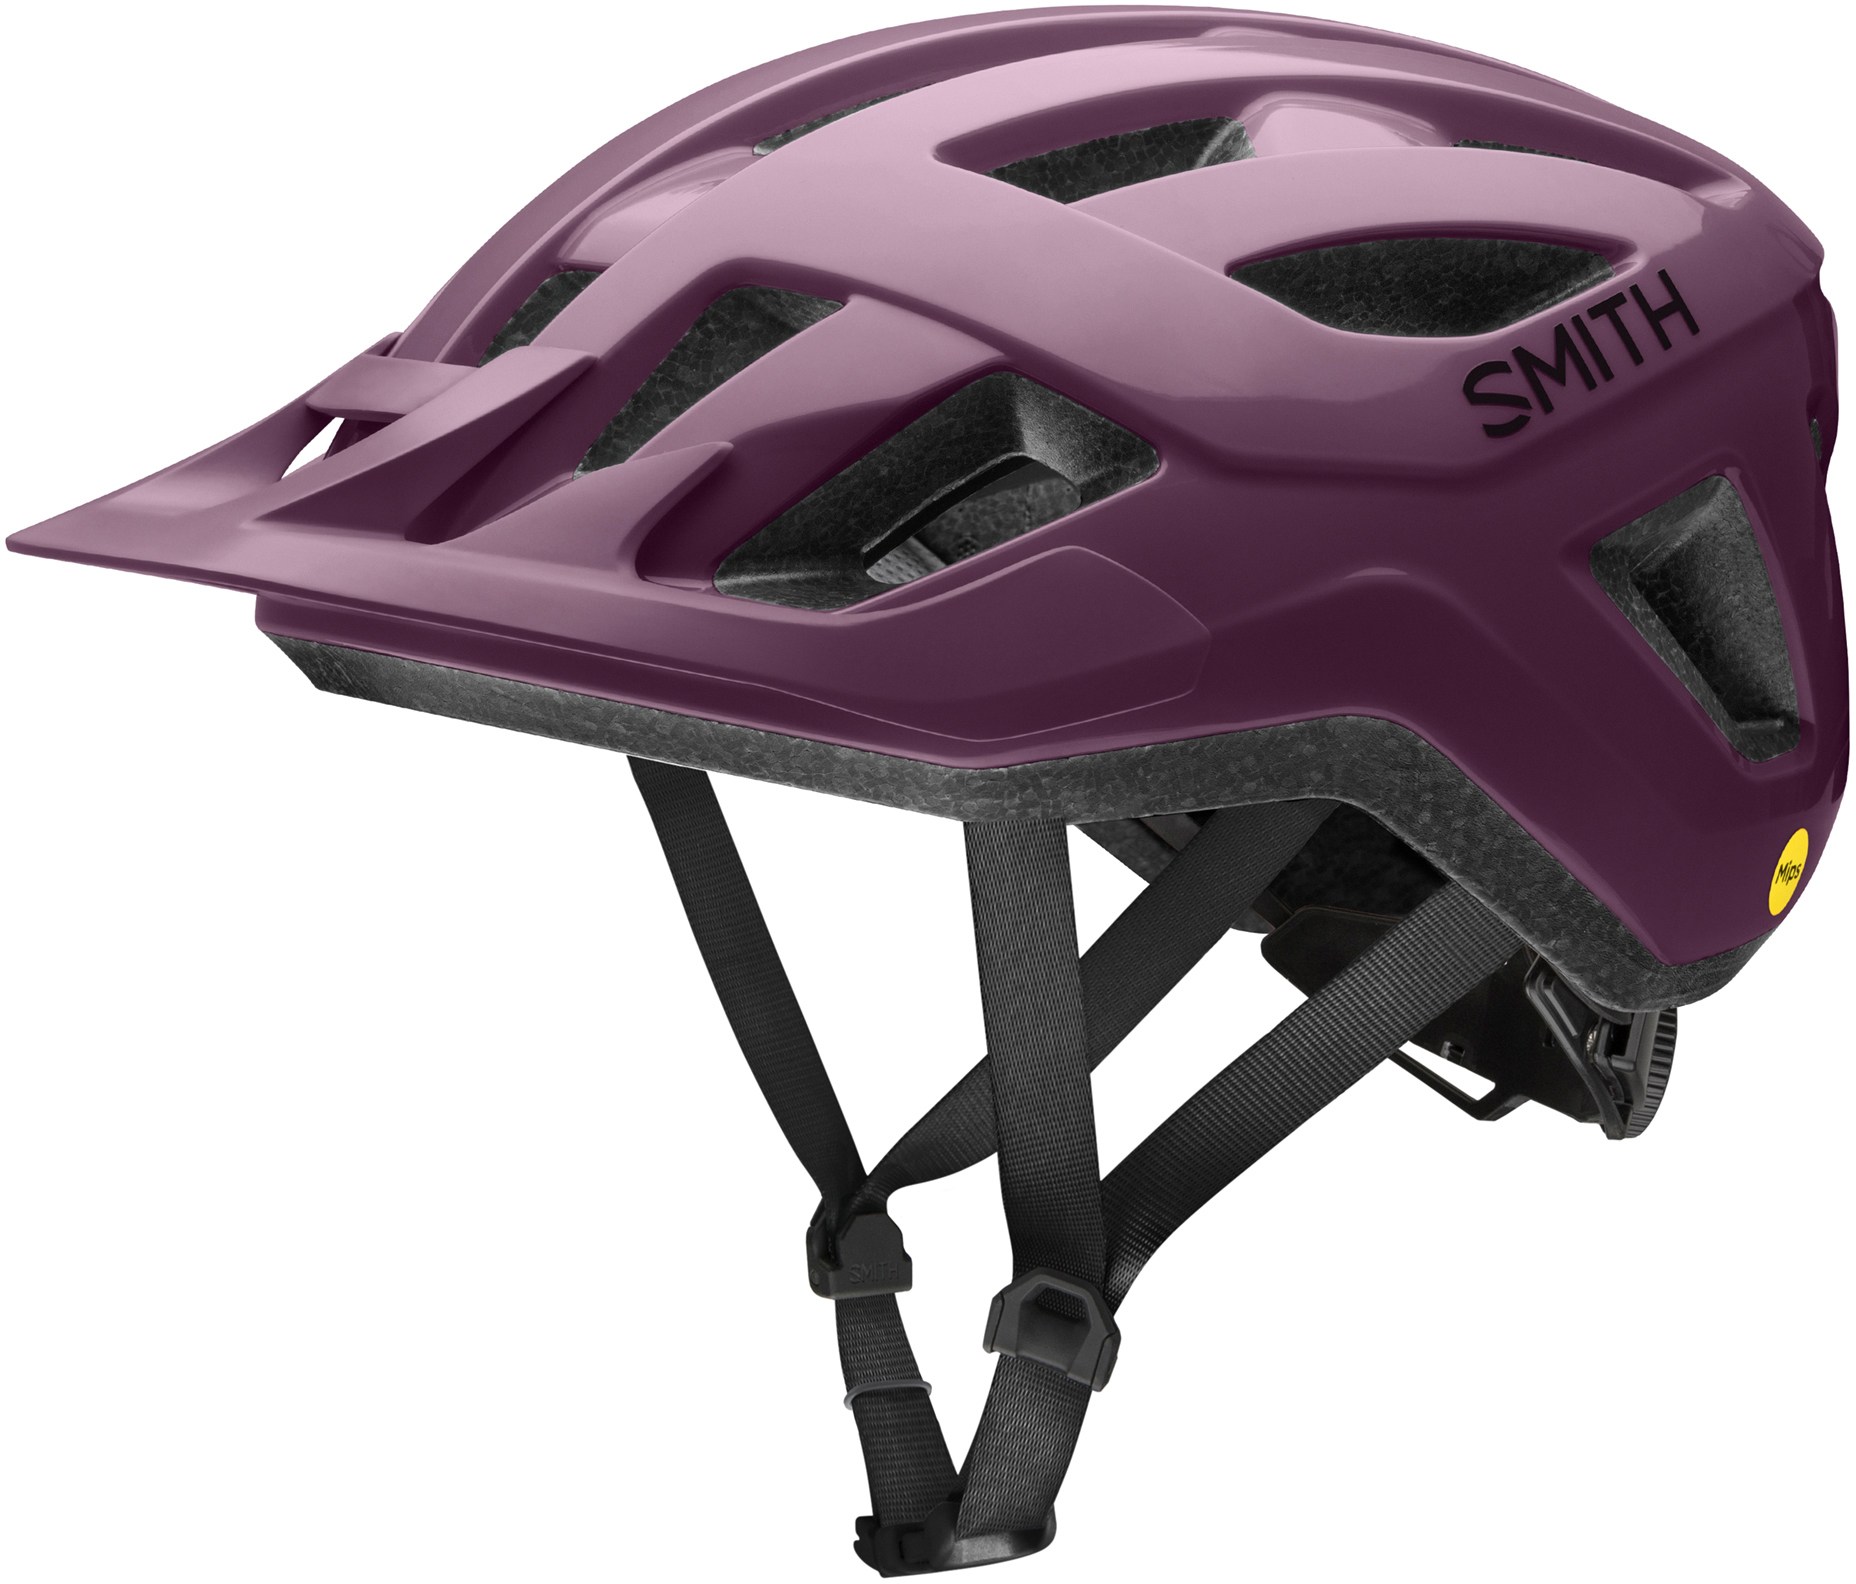 Велосипедный шлем Convoy MIPS Smith, фиолетовый